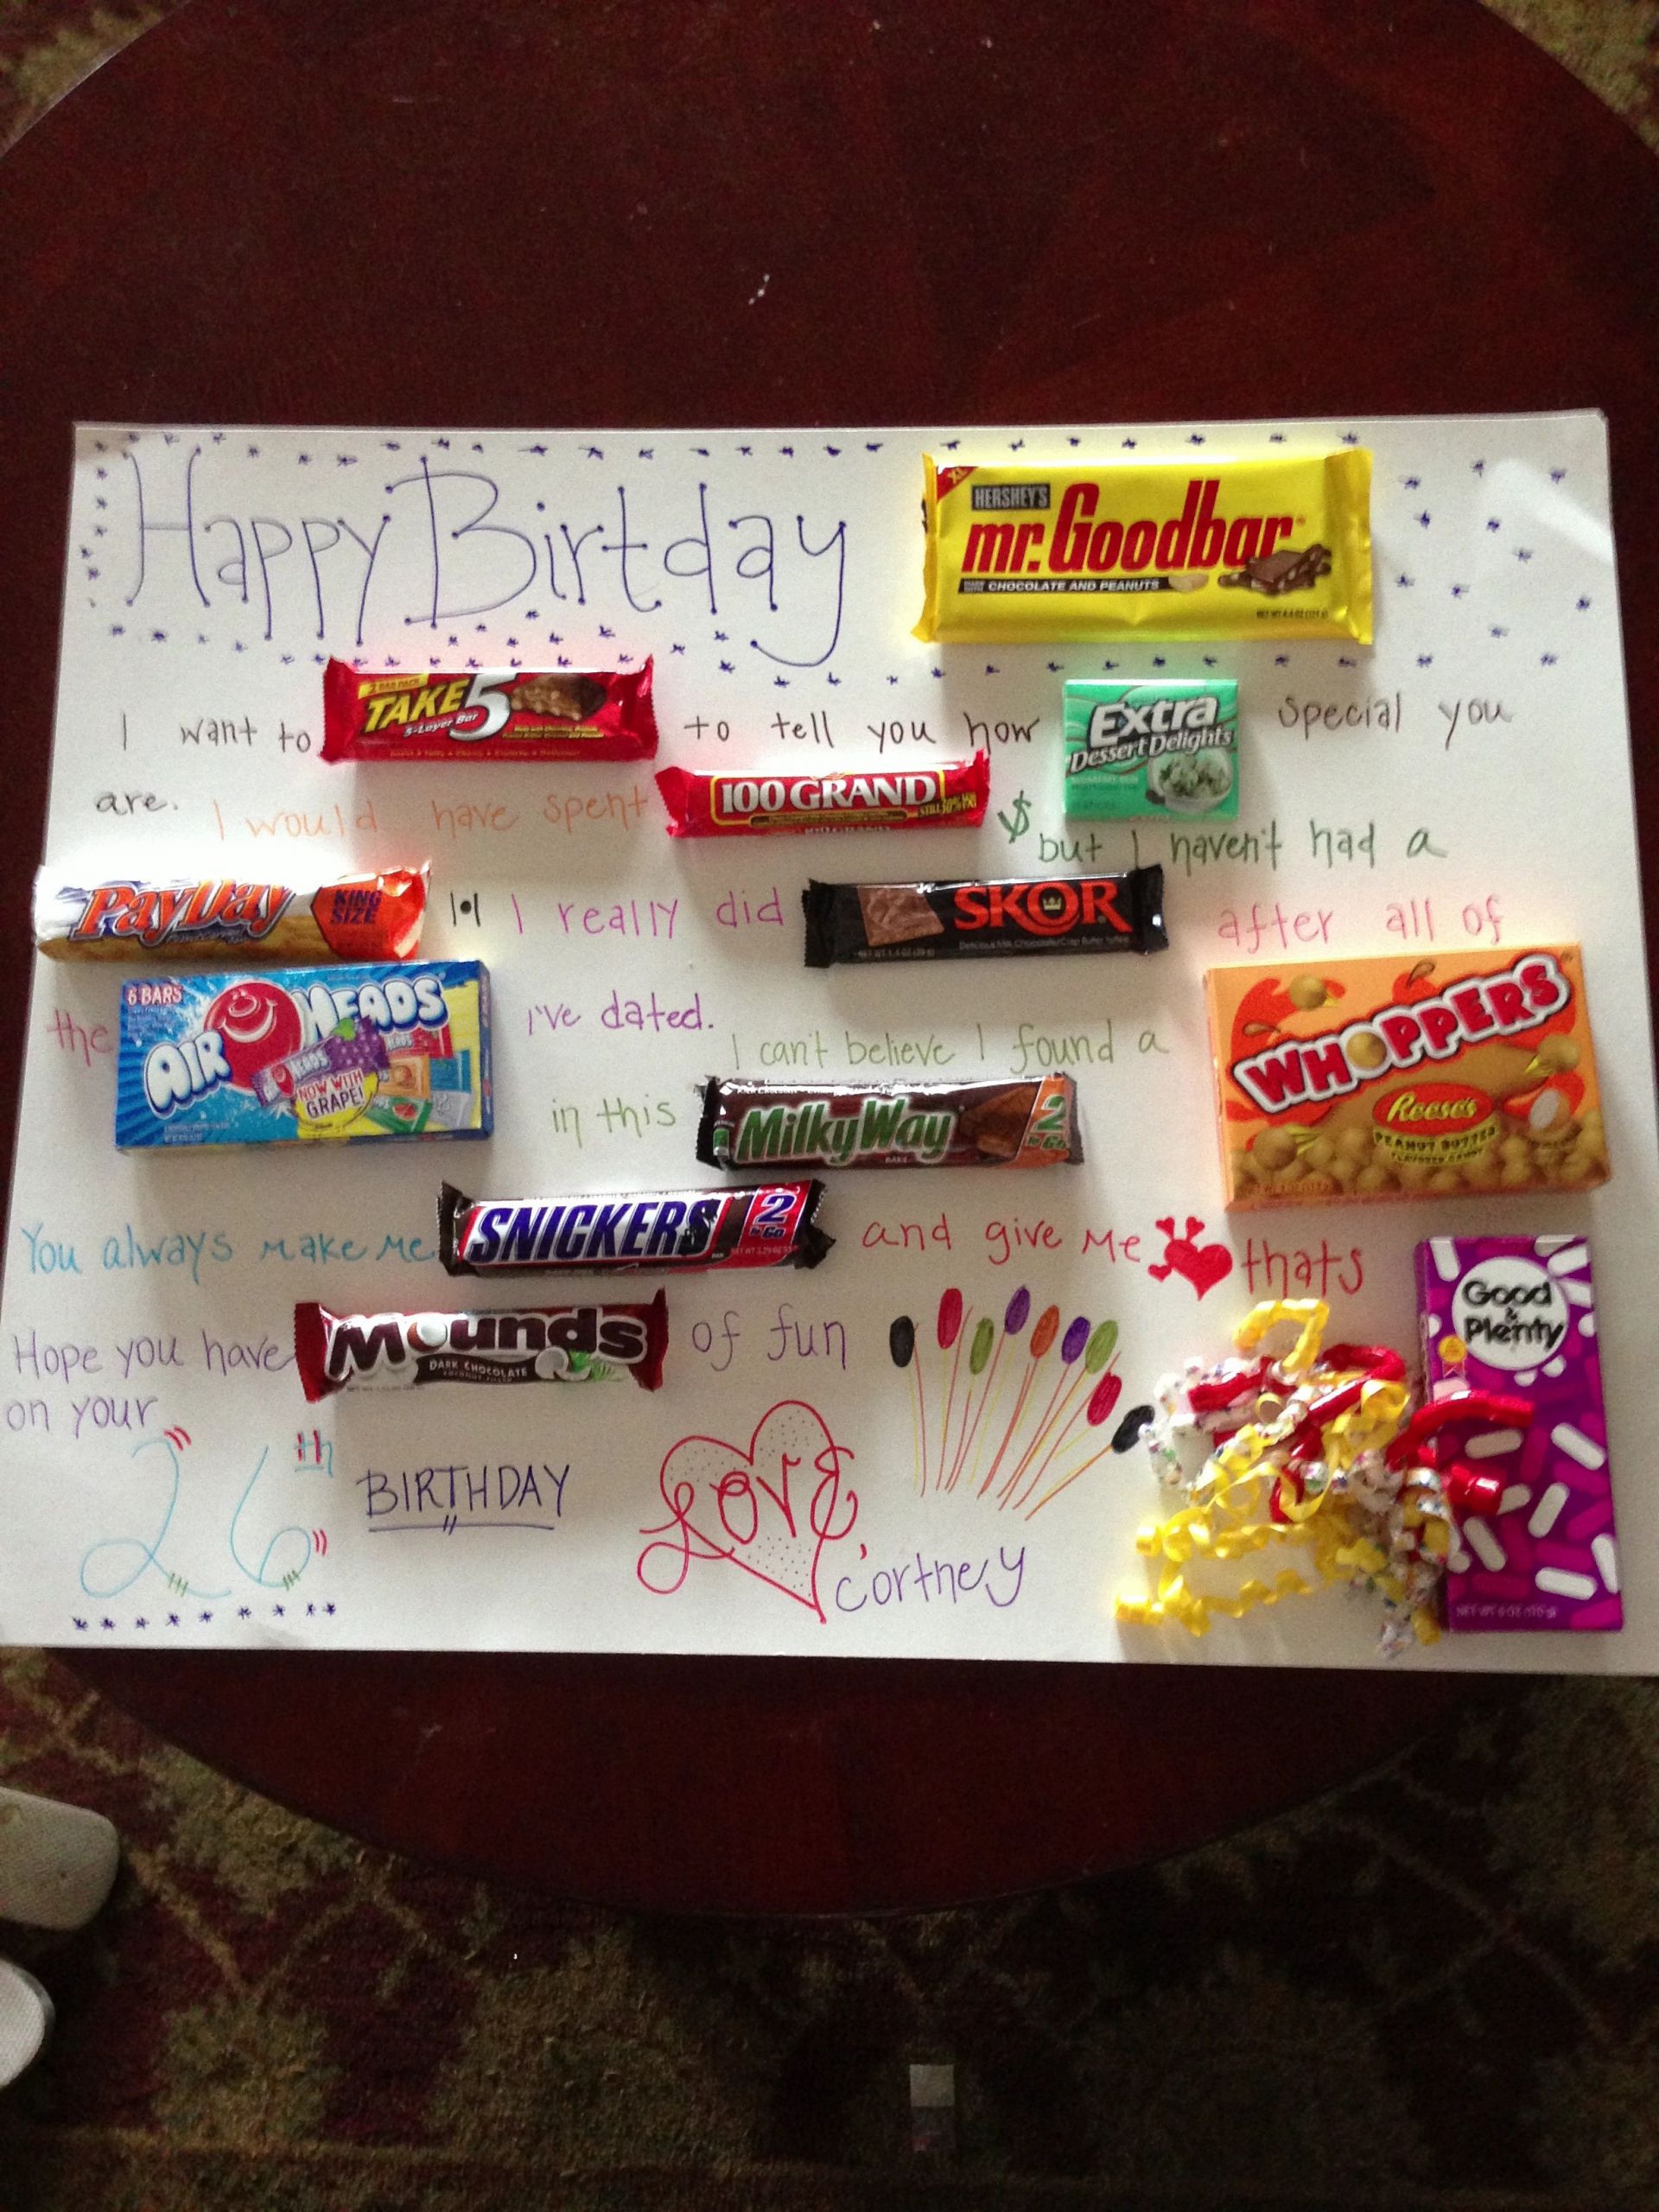 Cute Gift Ideas For Boyfriends Birthday
 For the boyfriends birthday